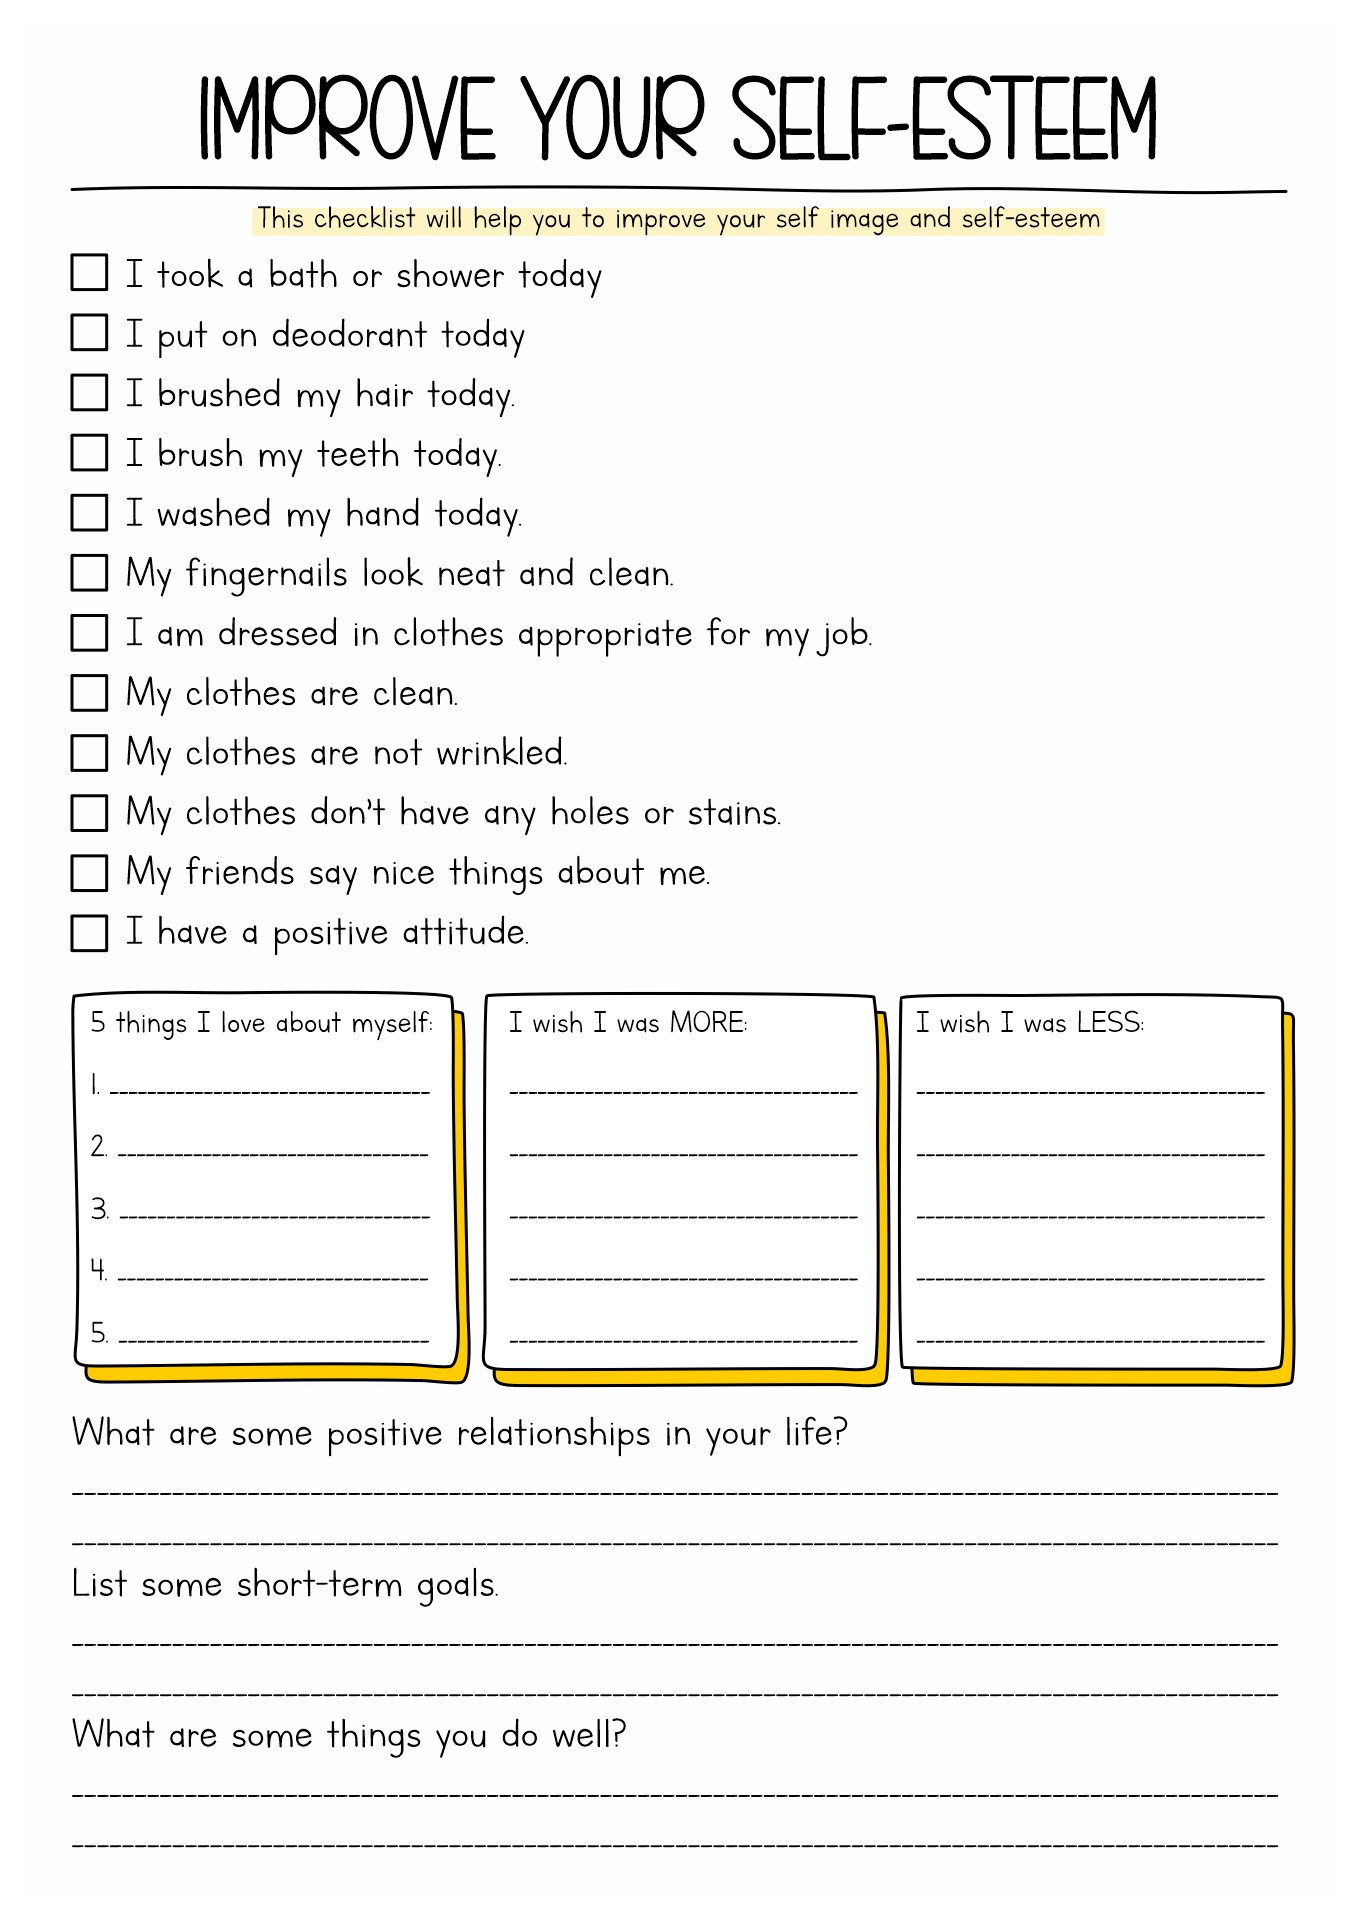 Self-Esteem Worksheets Image